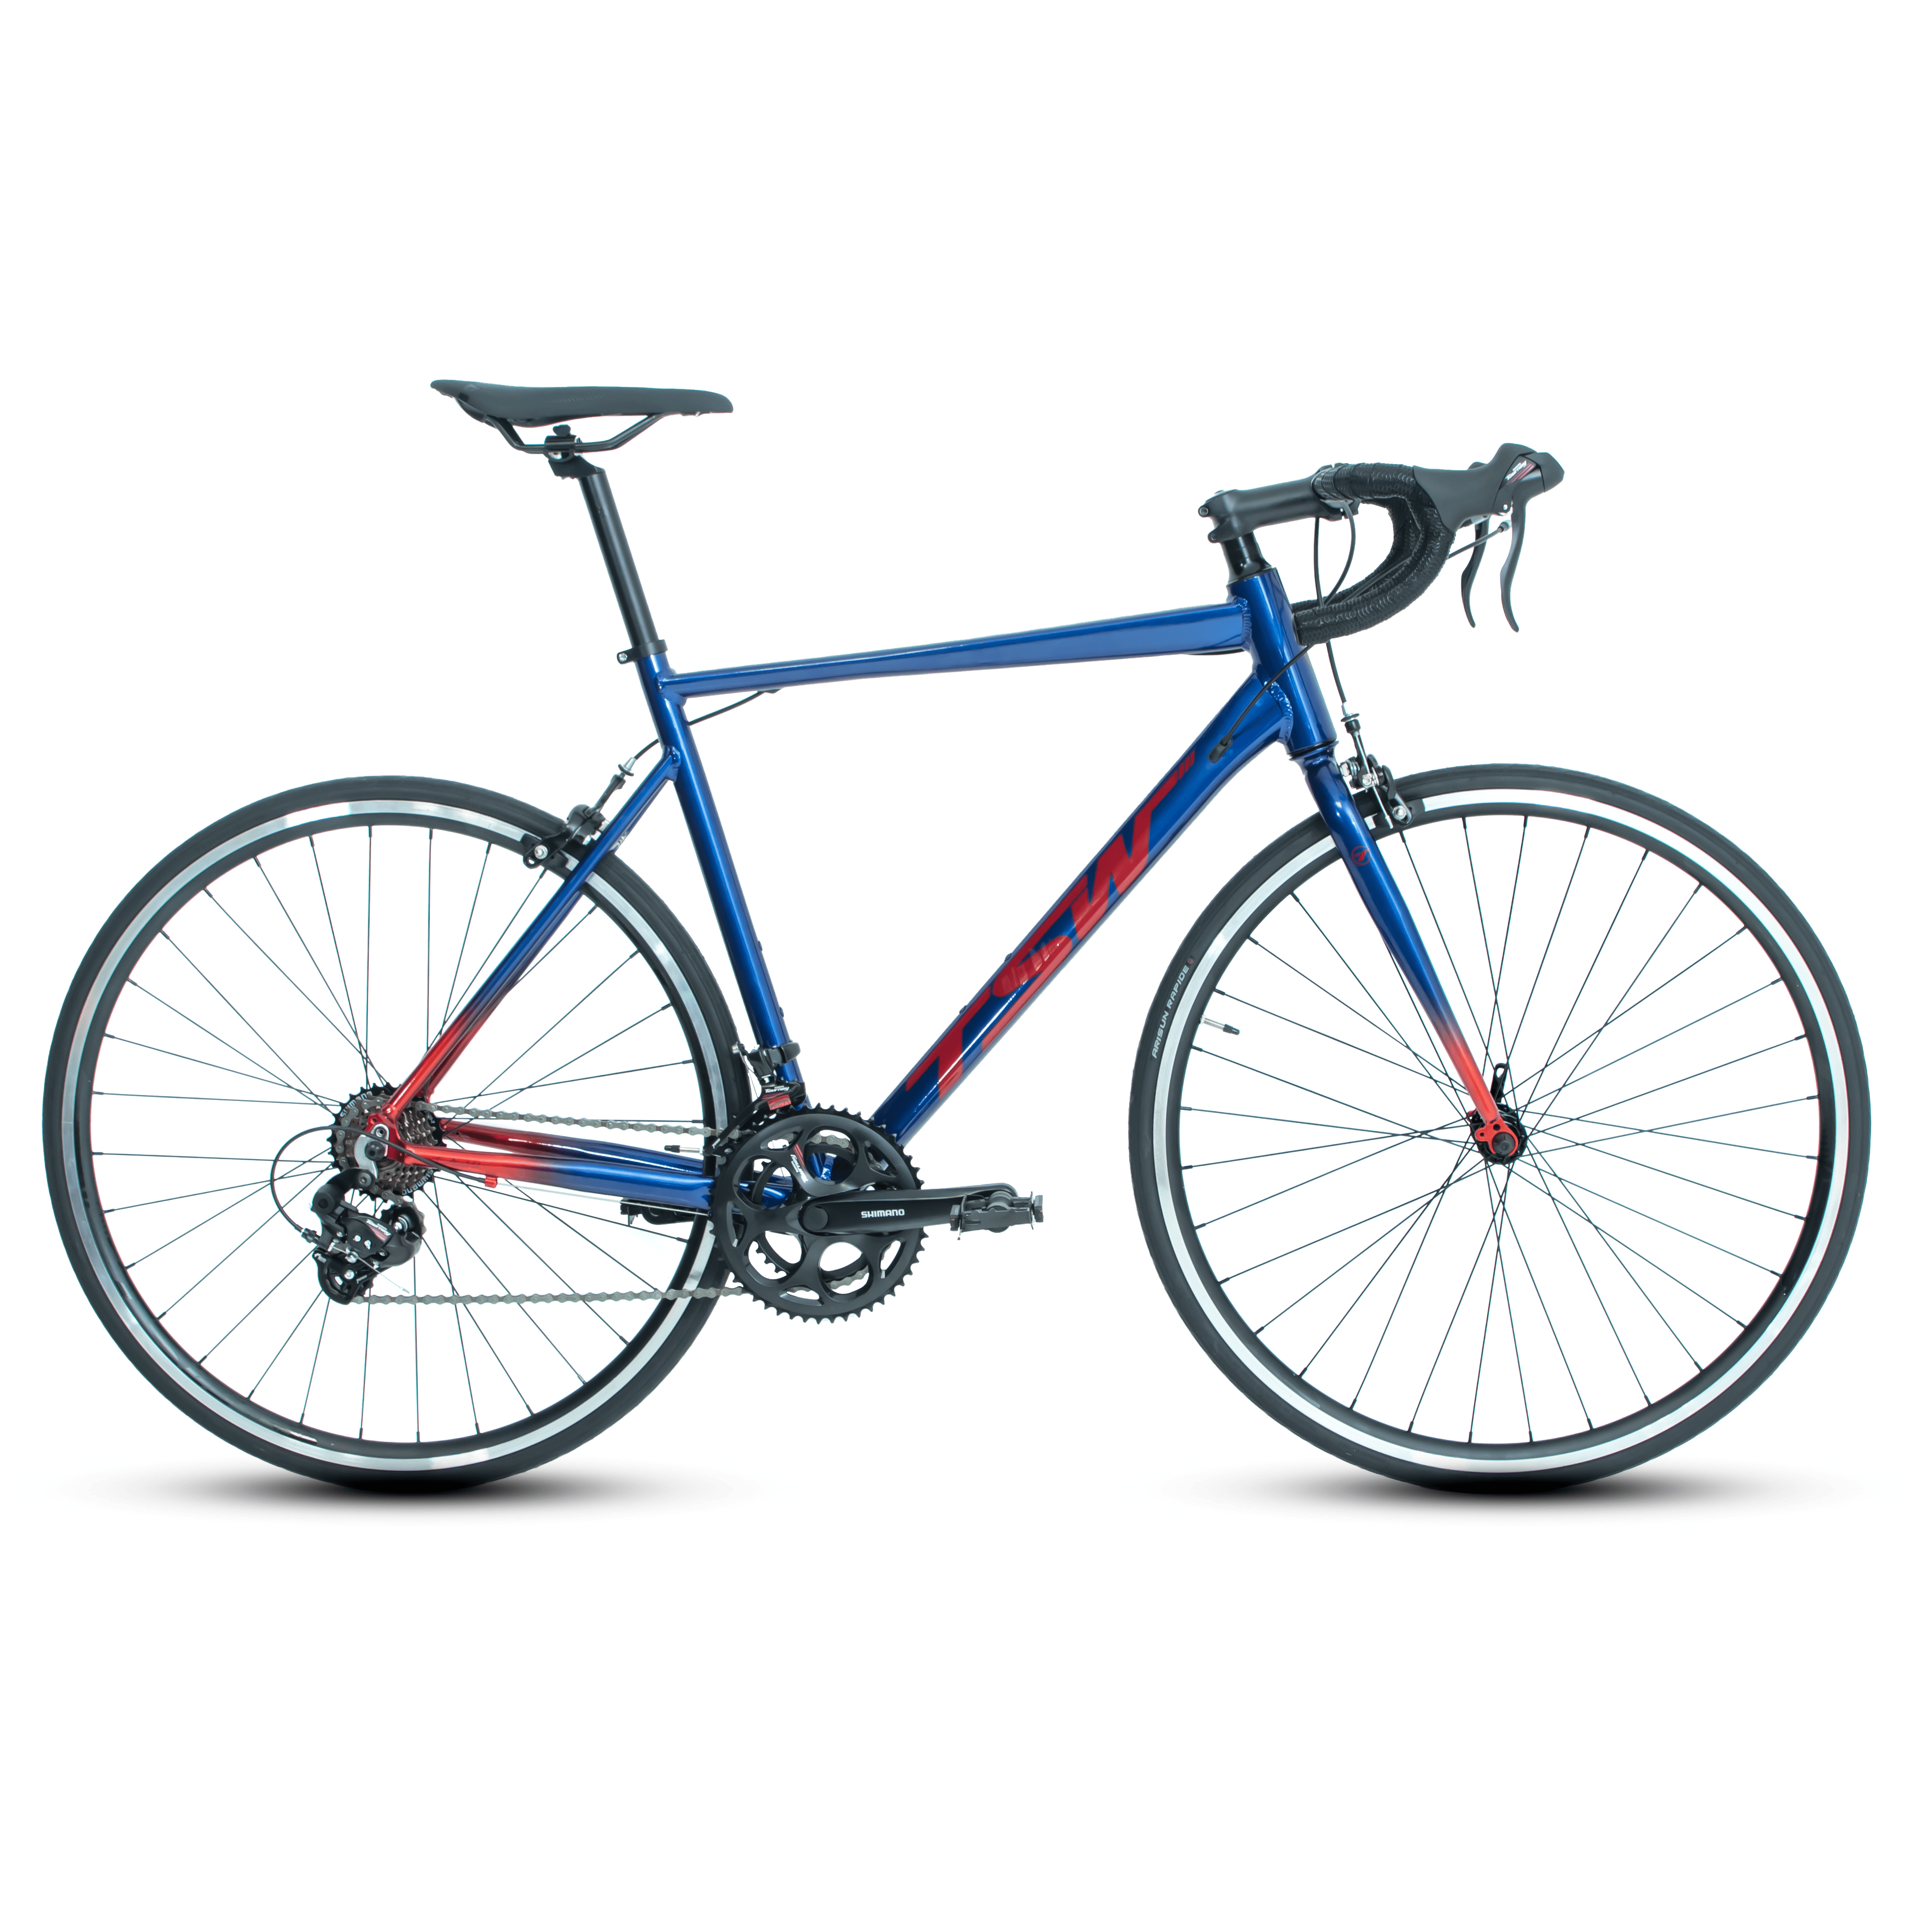 Bicicleta TSW TR30 - 510, Azul/Vermelho